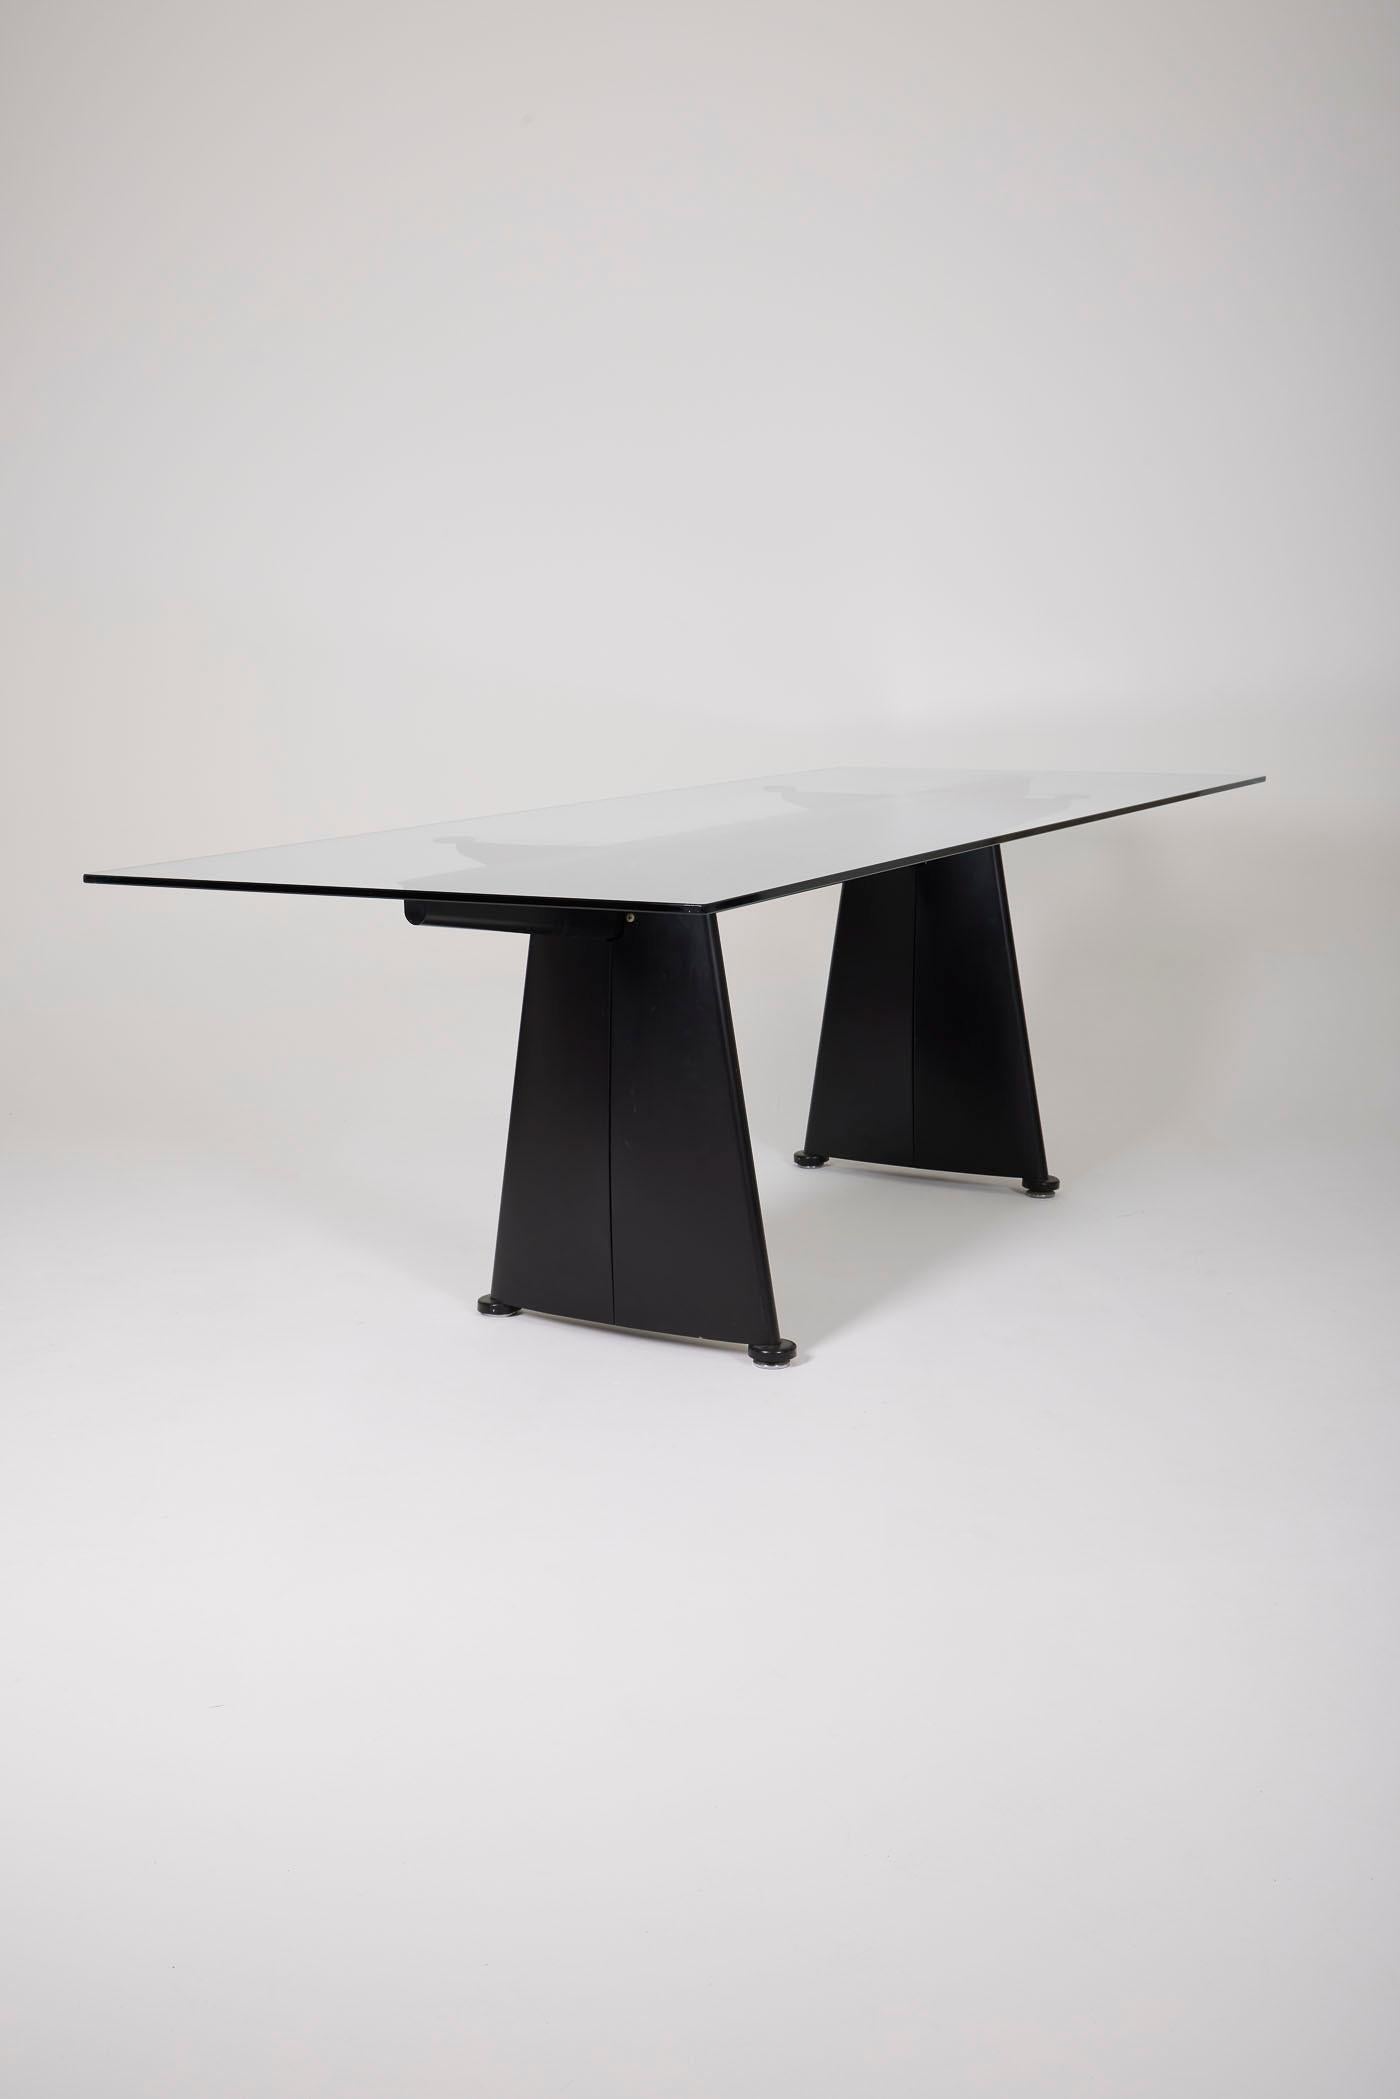 Großer Esstisch von dem berühmten Designer Jean Prouvé (1901-1984) für Tecta in den 1980er Jahren (1986). Platte aus mattiertem Glas und Struktur aus schwarzem Metall. Sehr guter Zustand.
DV142